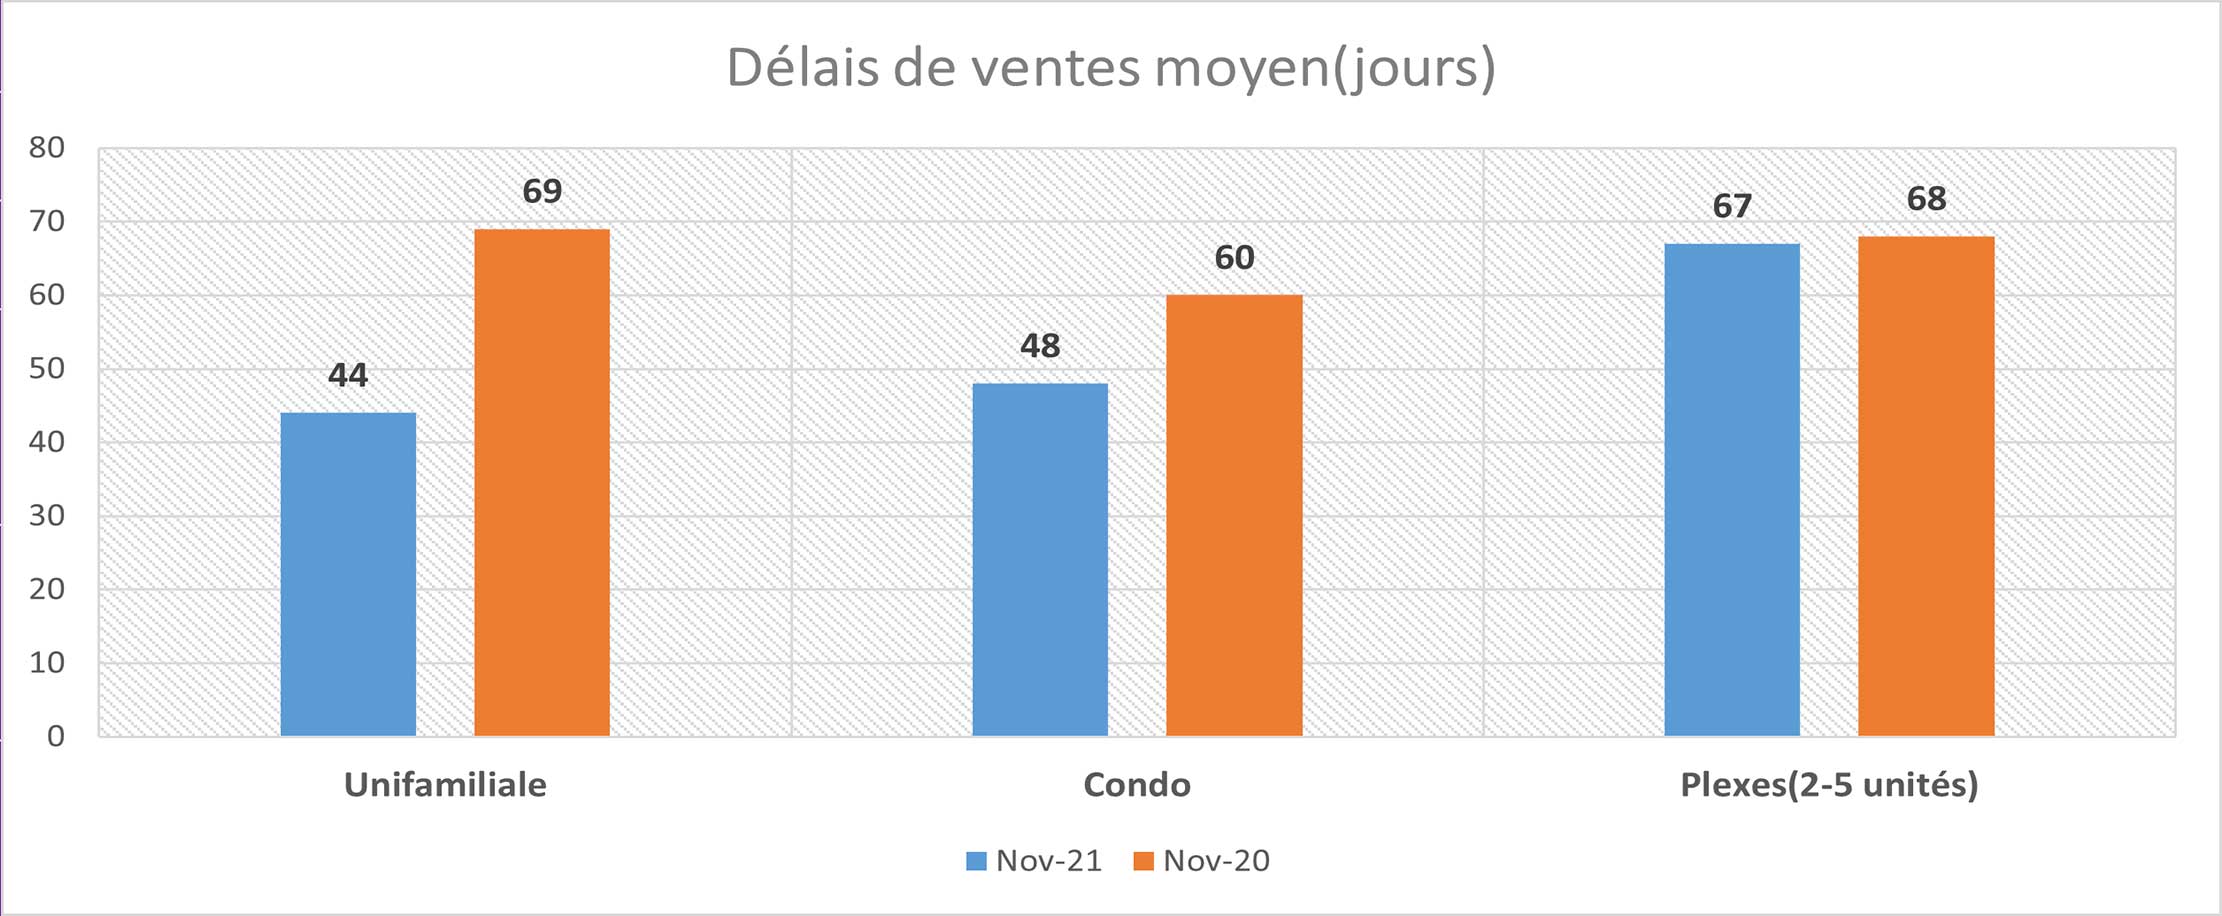 Rapport du Marché Immobilier du Québec, novembre 2021